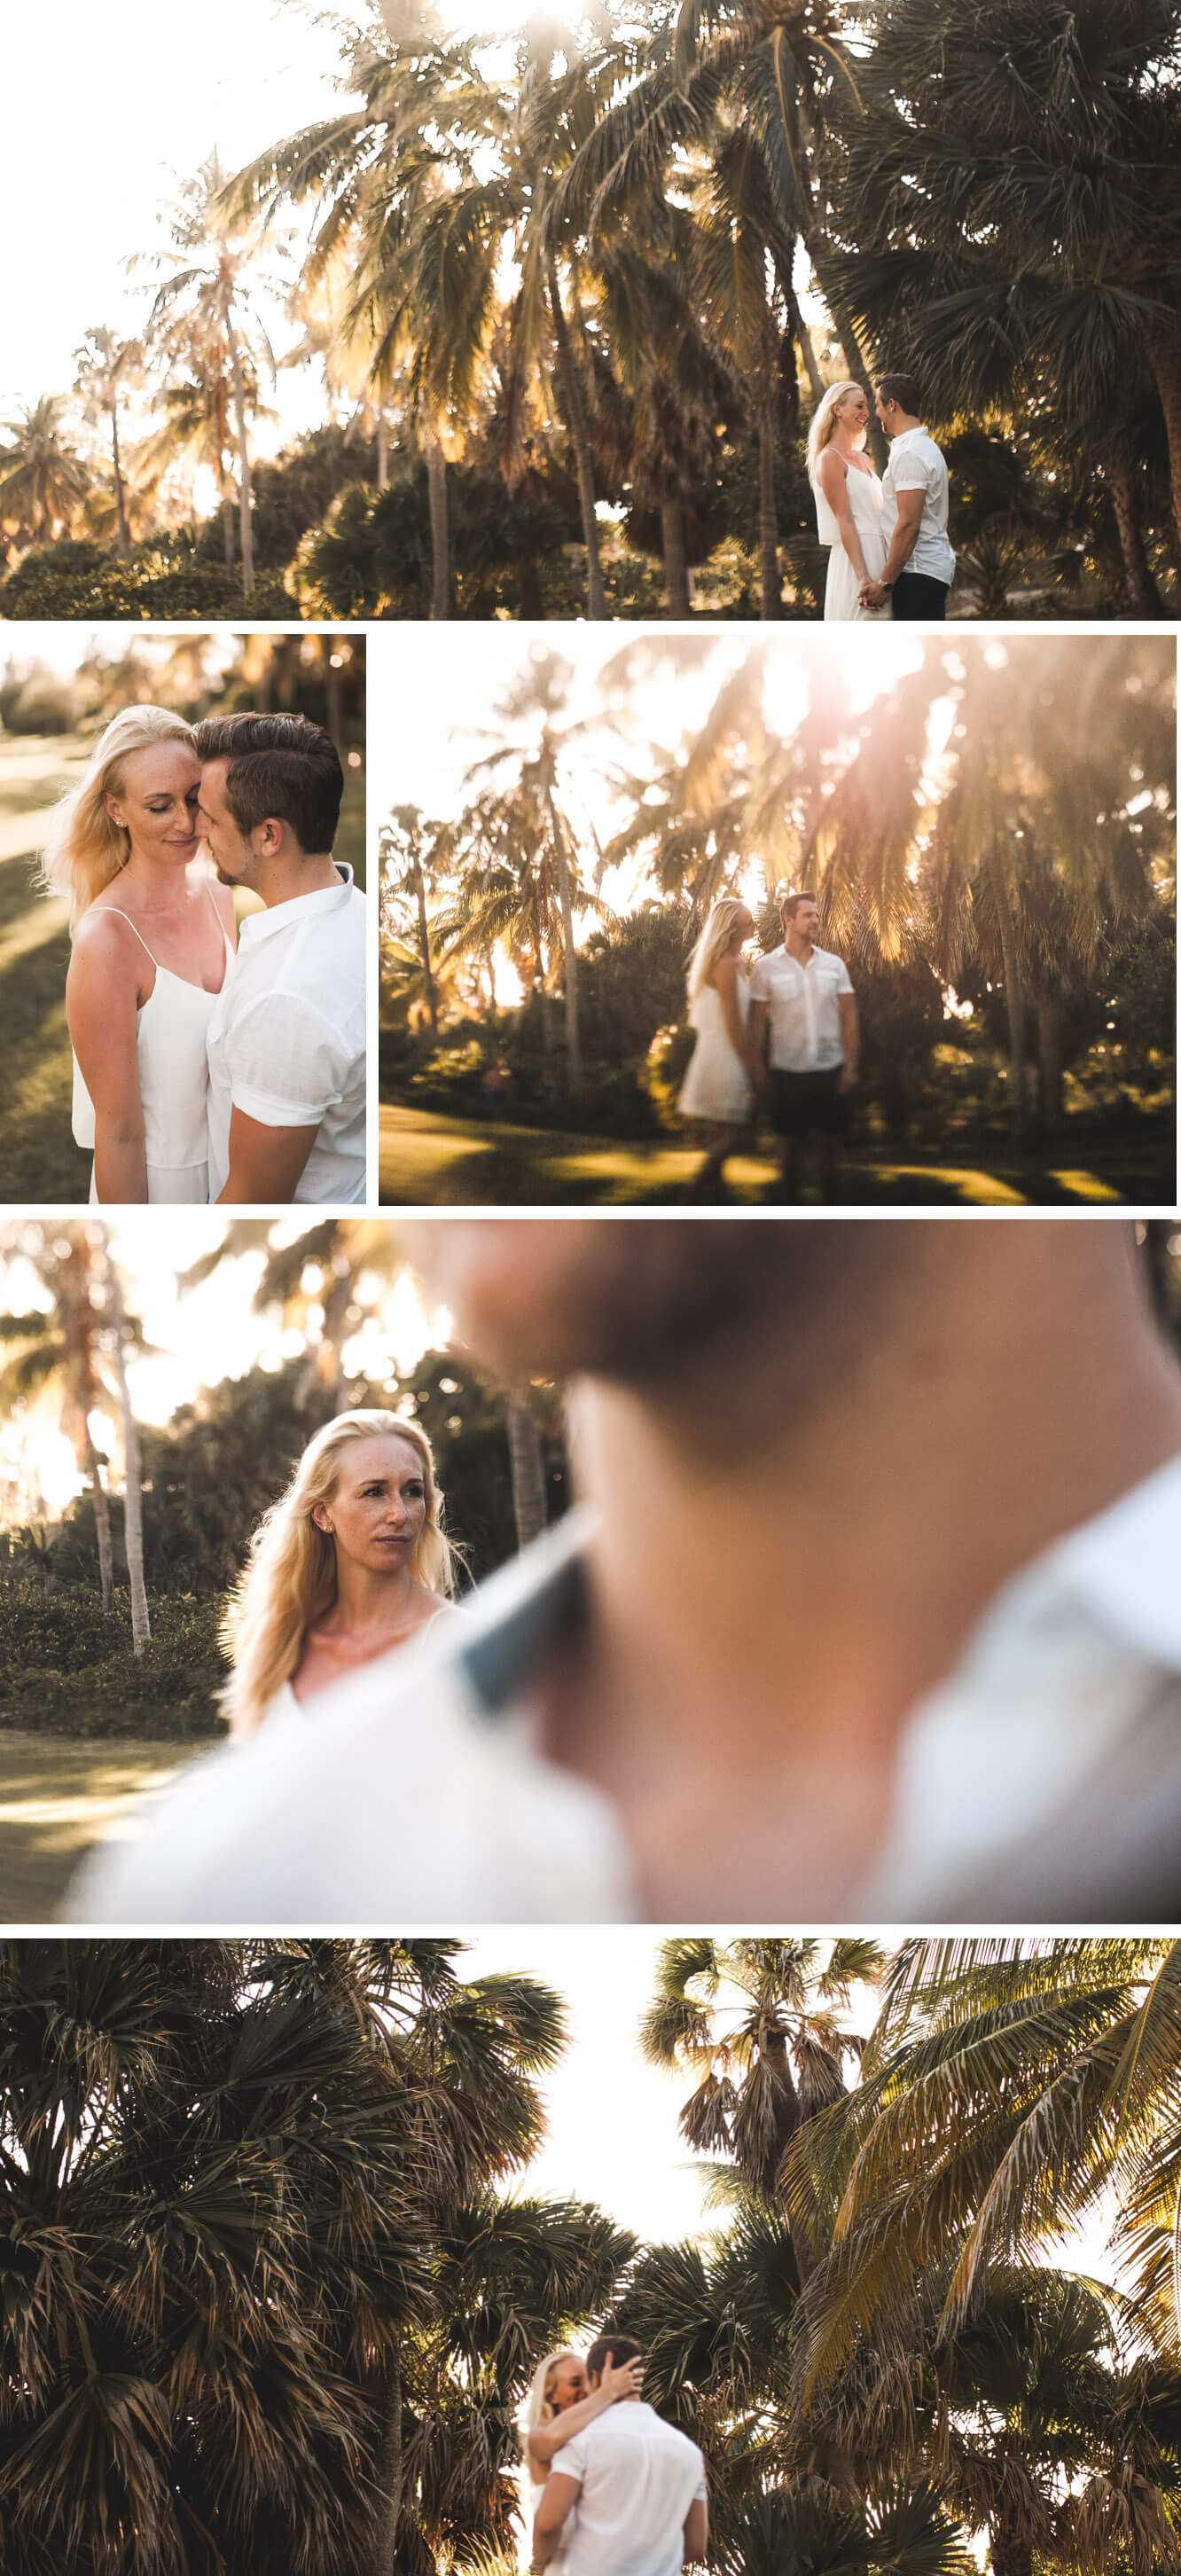 Kuba Paarshooting unter Palmen bei Sonne in weißem Kleid